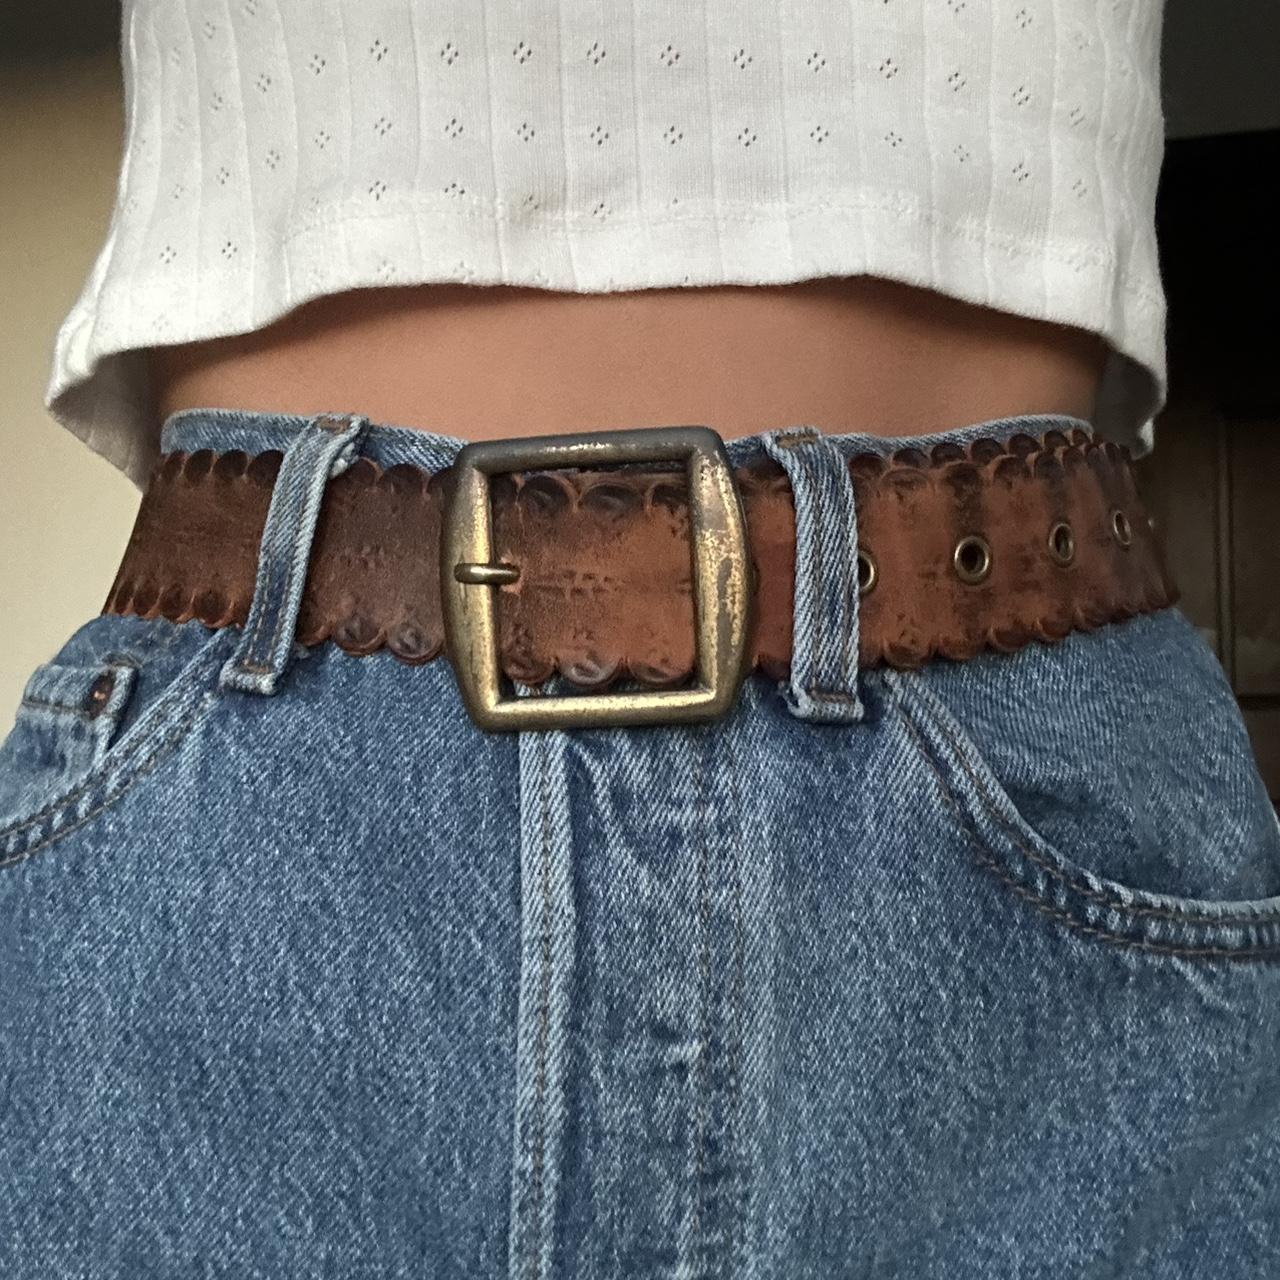 Vintage leather scalloped belt 40” long - Depop